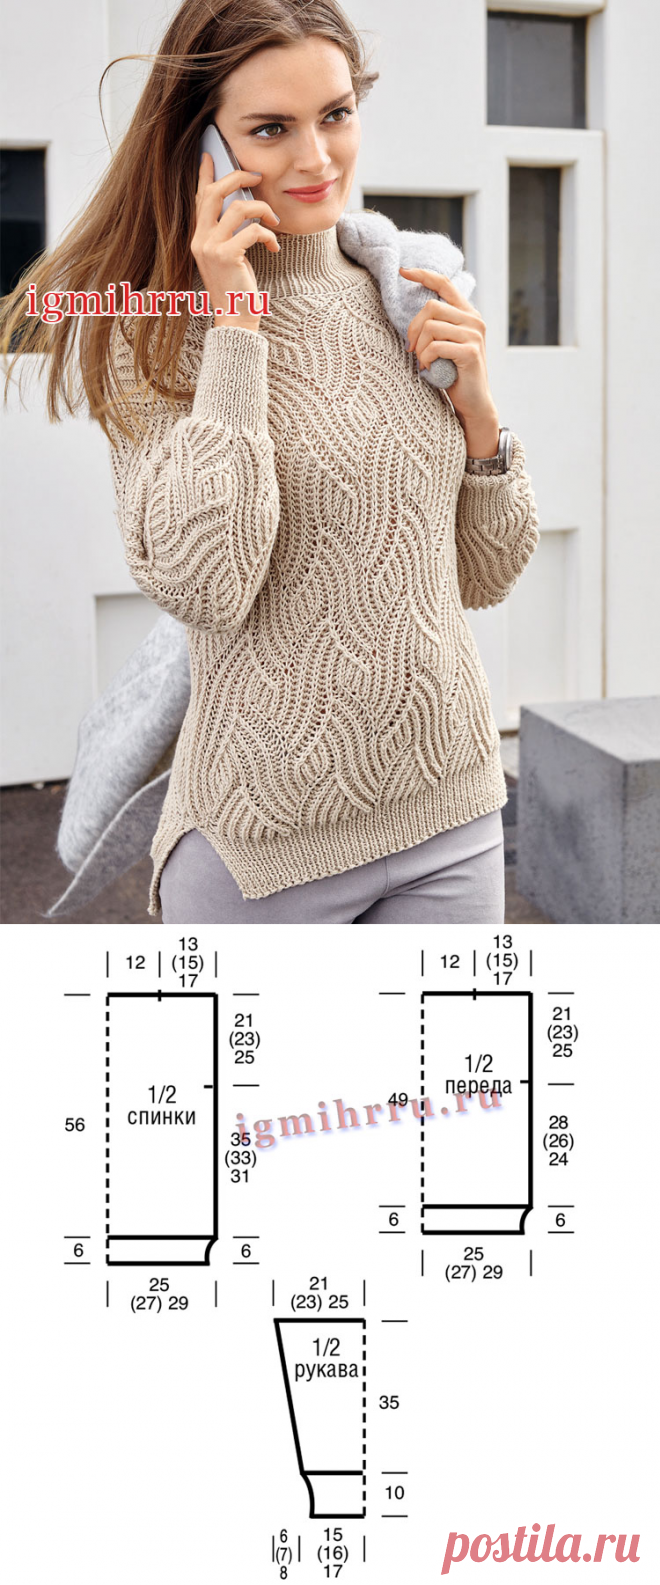 Кремовый свитер с рельефным волнообразным узором. Вязание спицами